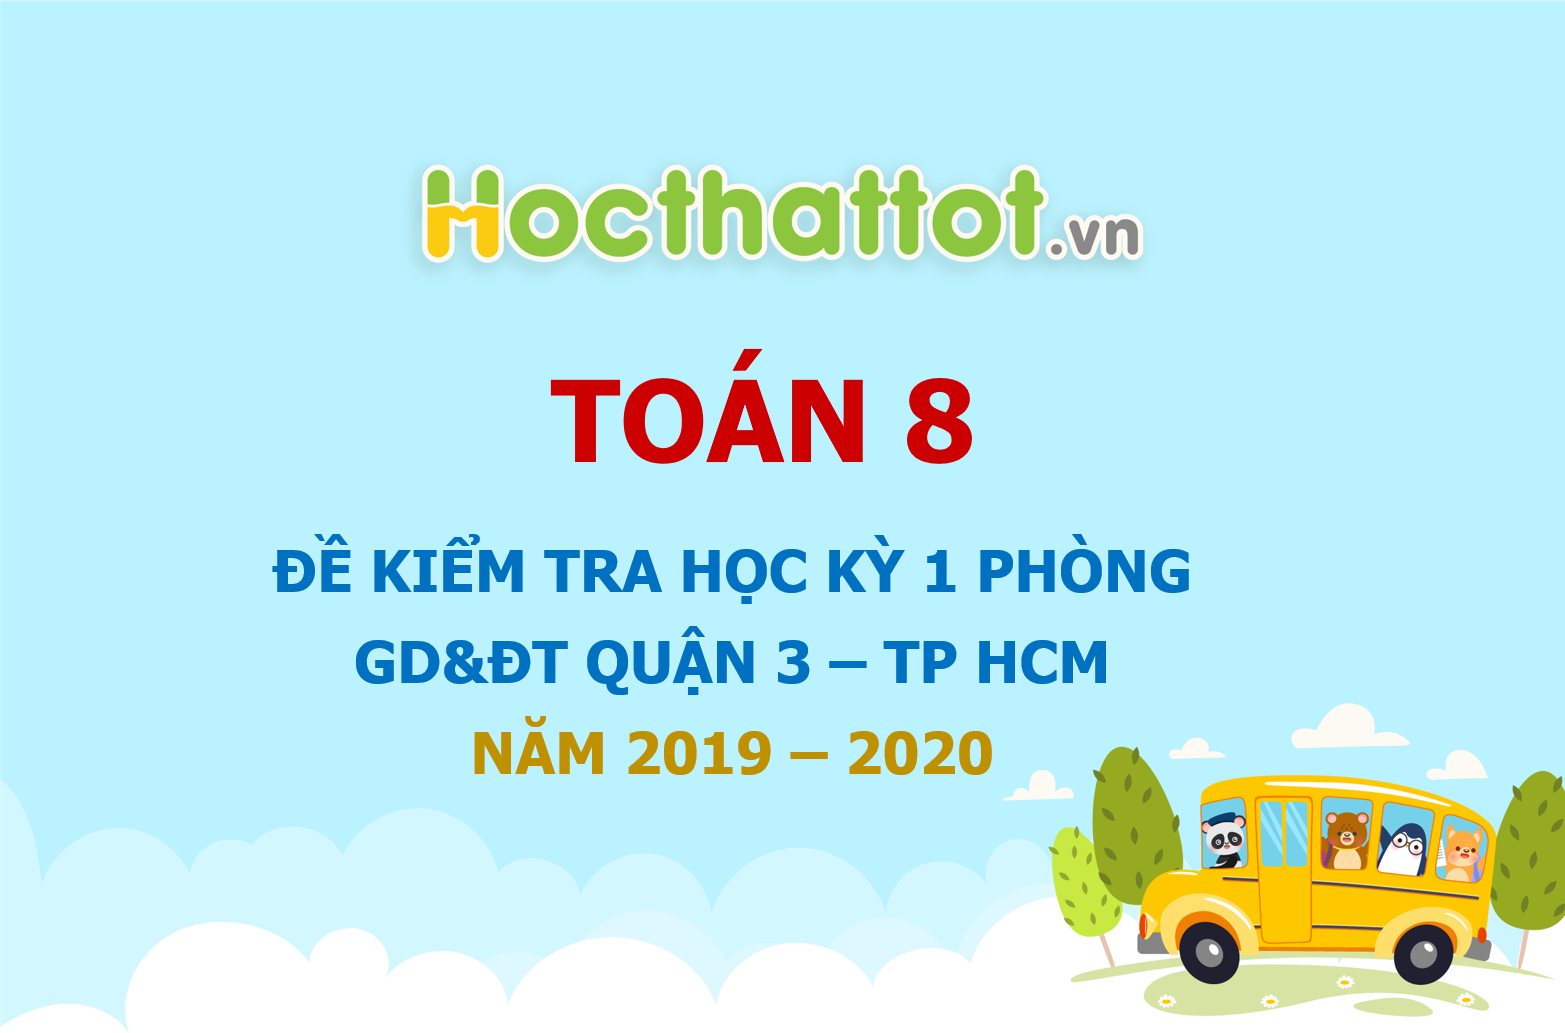 de-kiem-tra-hoc-ky-1-toan-8-nam-2019-2020-phong-gddt-quan-3-tp-hcm